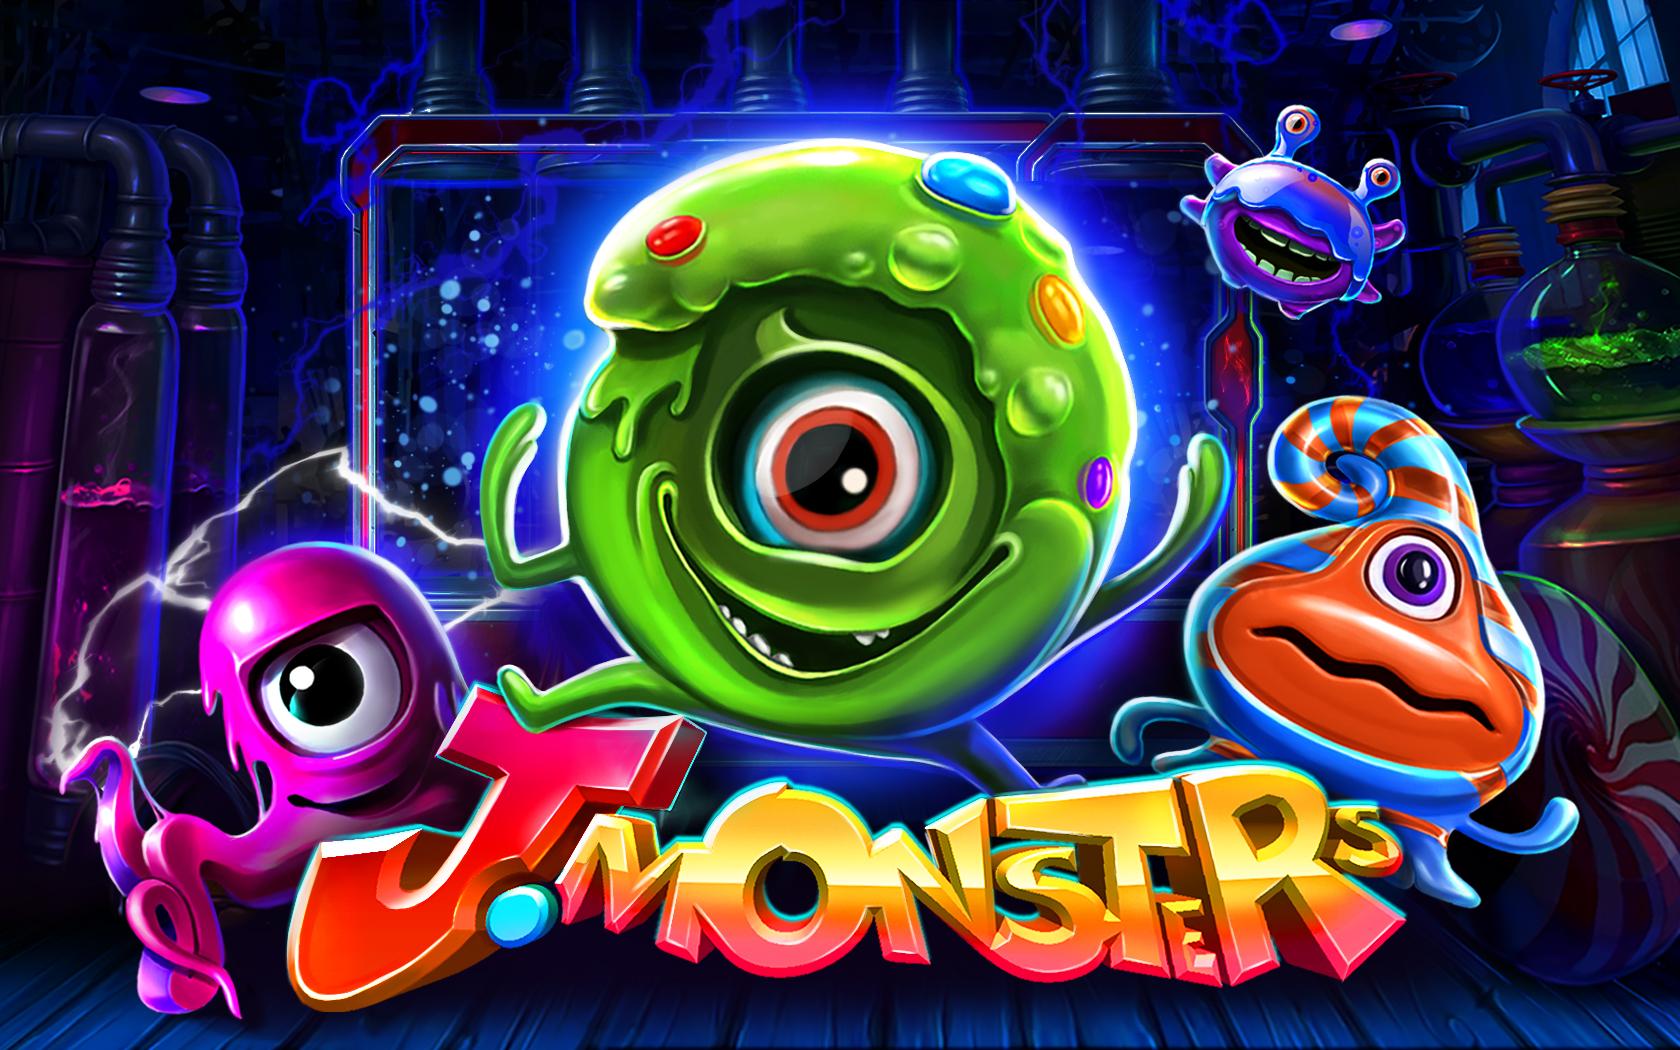 J.Monsters | Promotion pack | Online slot